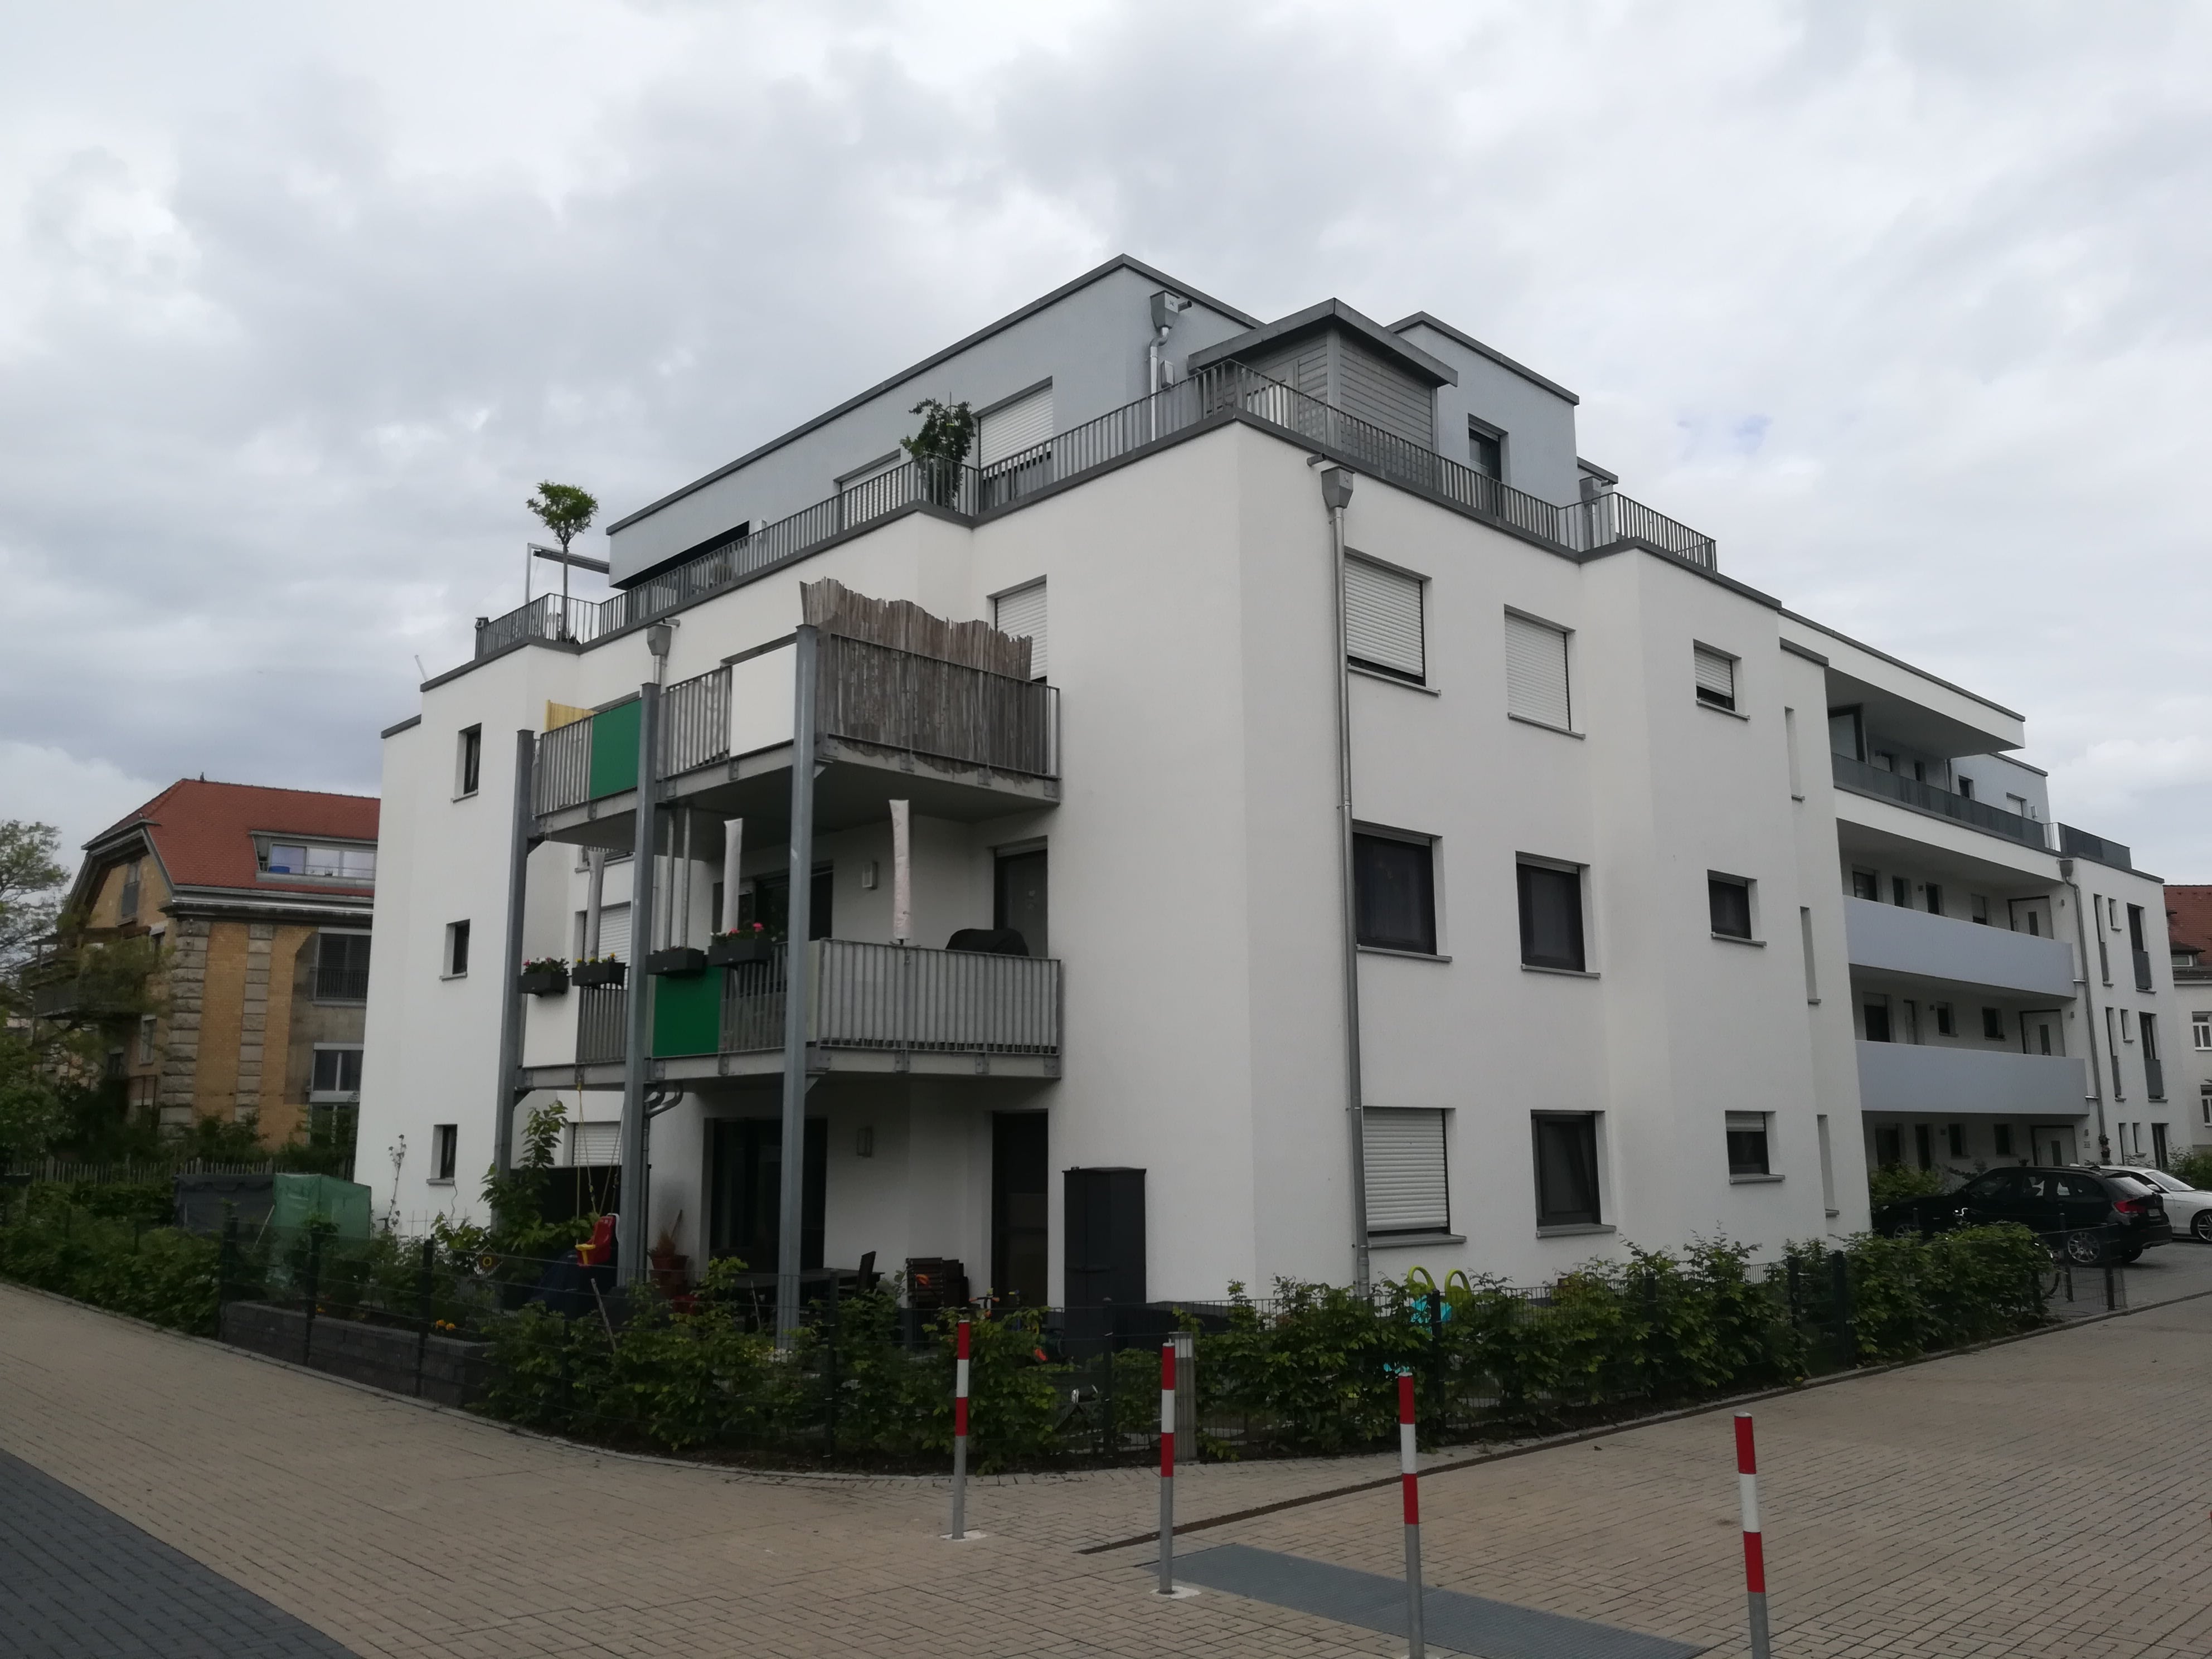 Жилая и коммерческая недвижимость во Фрайбурге